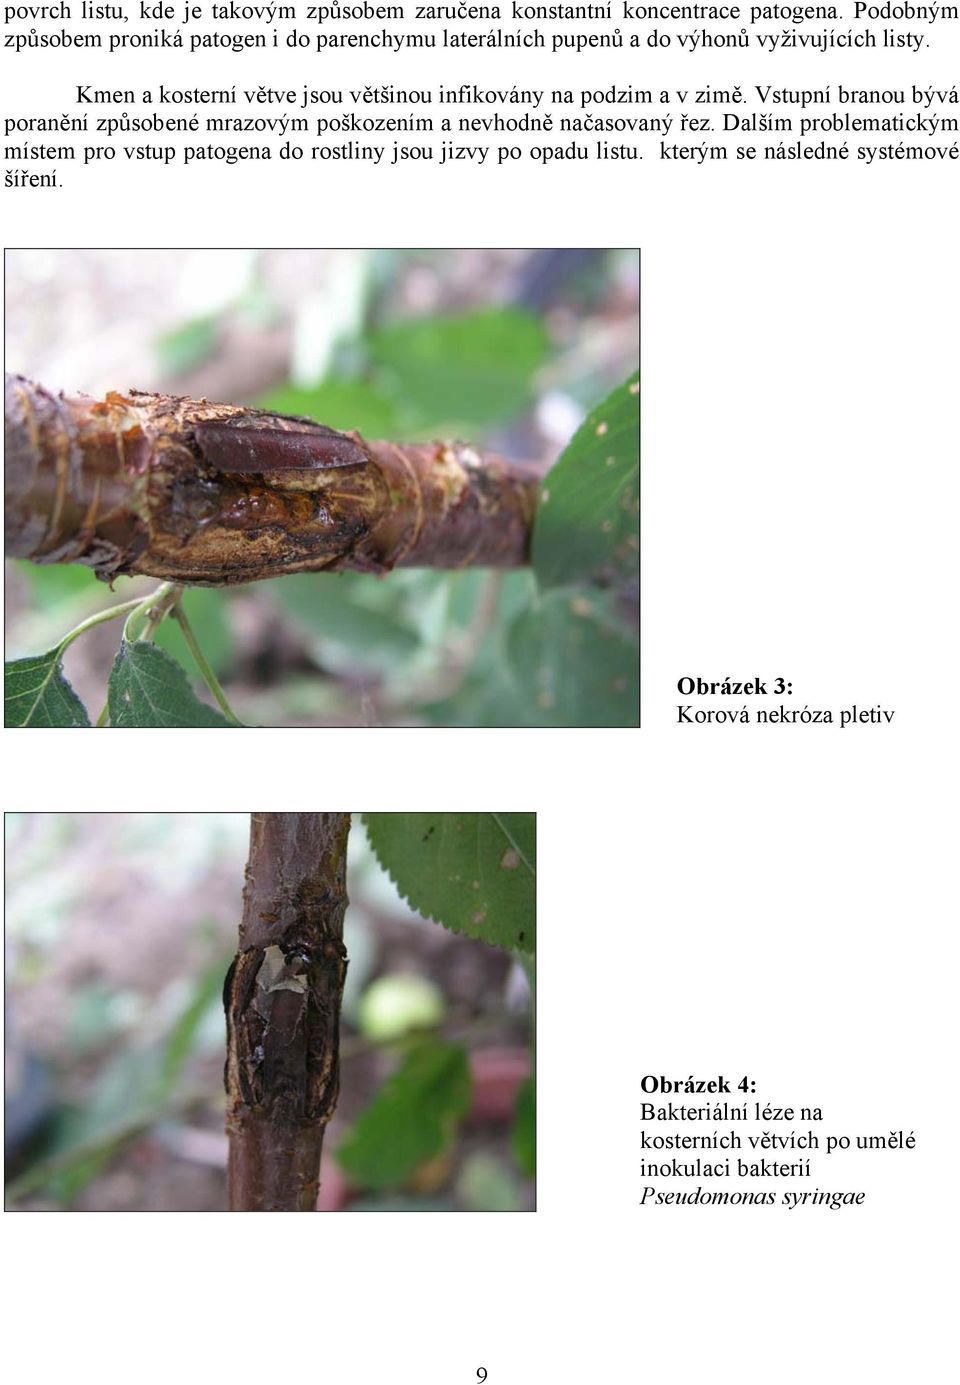 Kmen a kosterní větve jsou většinou infikovány na podzim a v zimě.